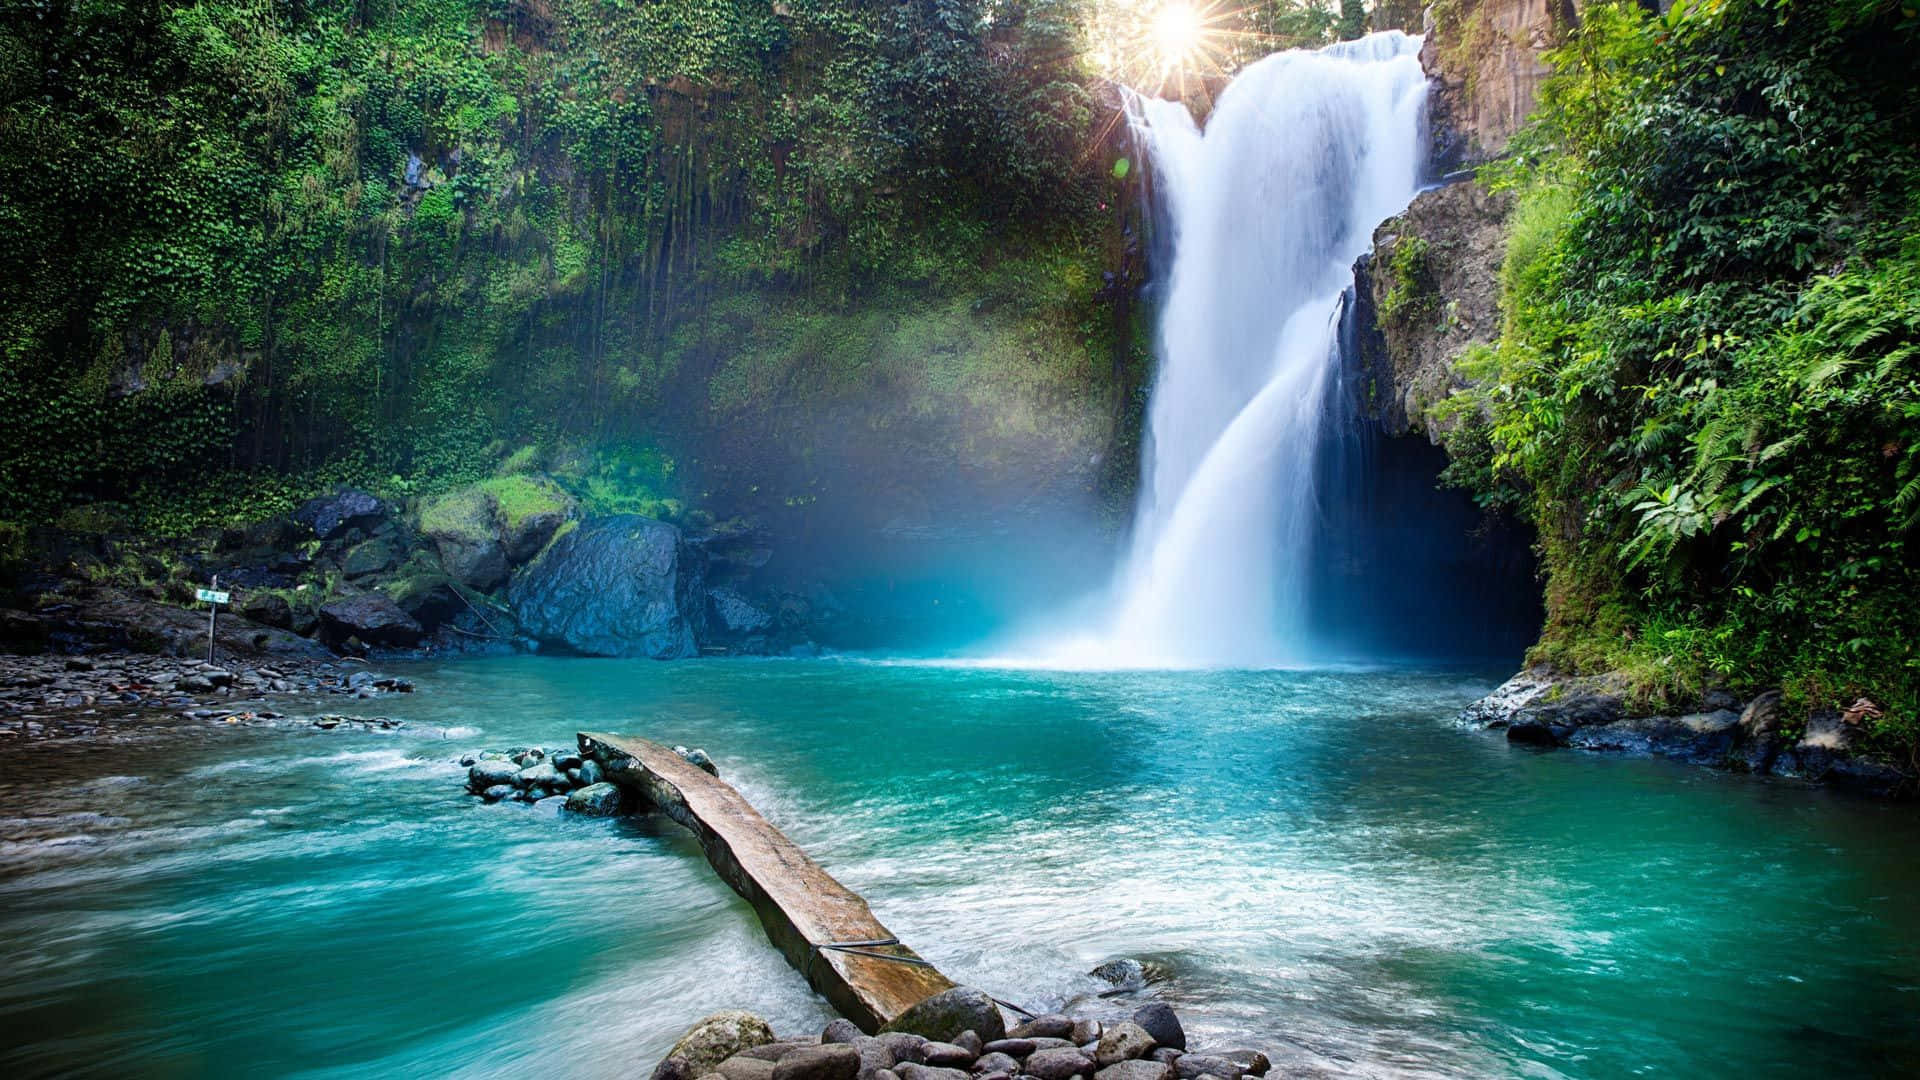 Awe-inspiring Waterfalls"